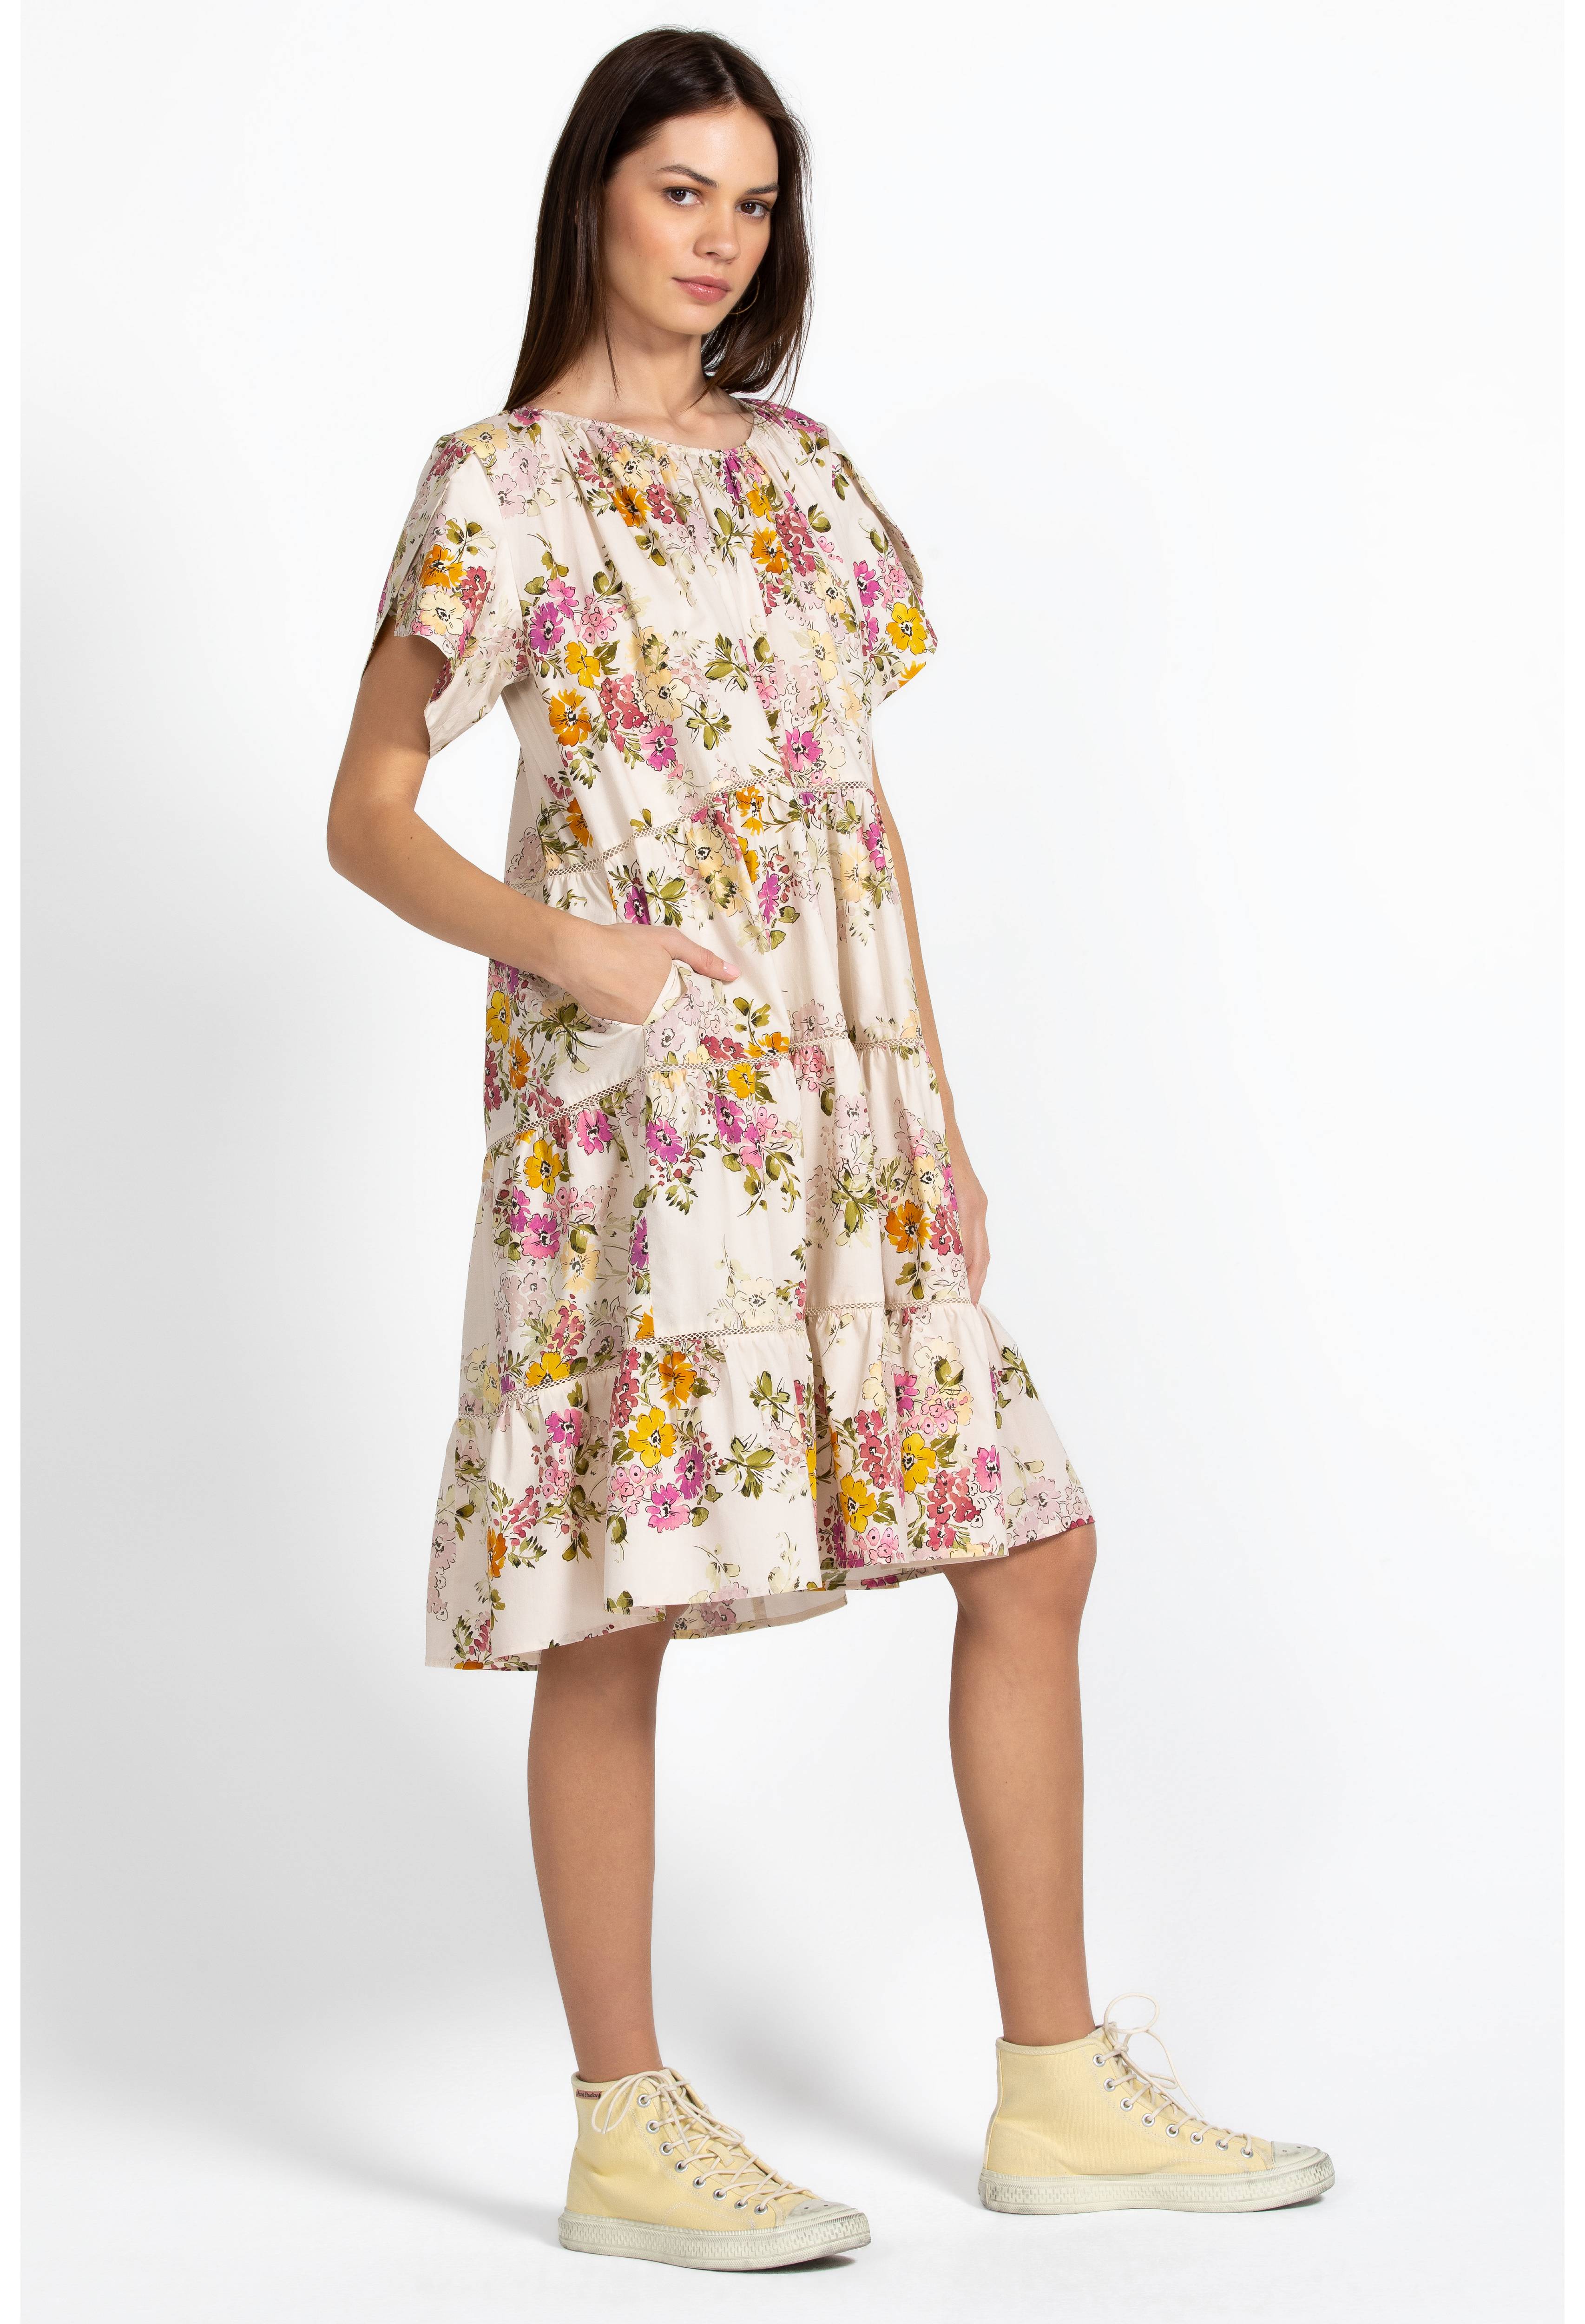 Magnolia Tiered Mini Dress, , large image number 1